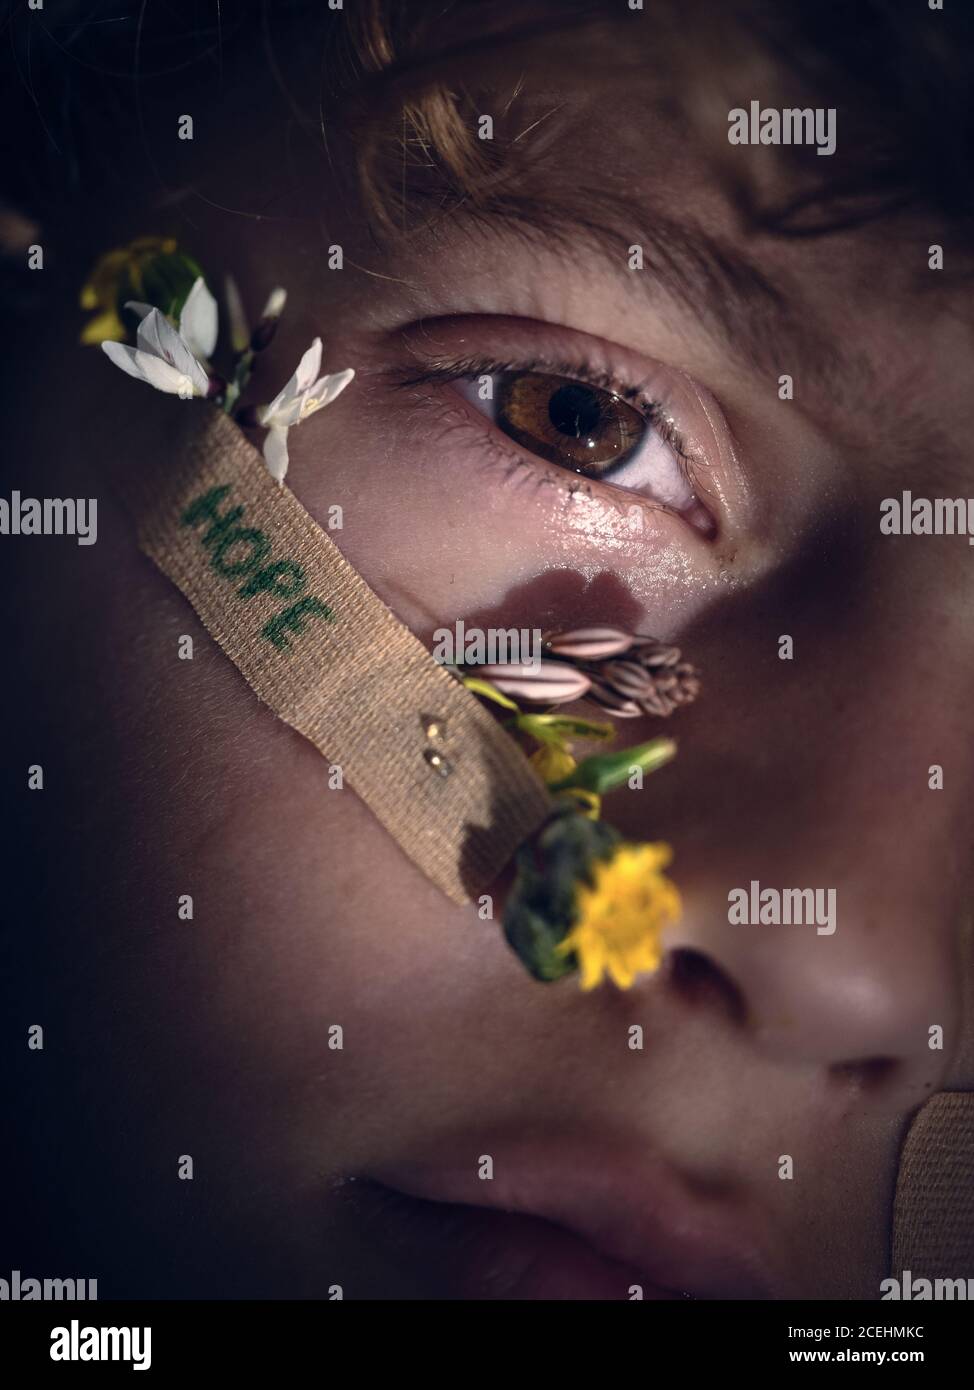 Concepto de closeup persona cara con ayuda banda con esperanza palabra y pequeñas flores frescas mirando la cámara en la oscuridad Foto de stock